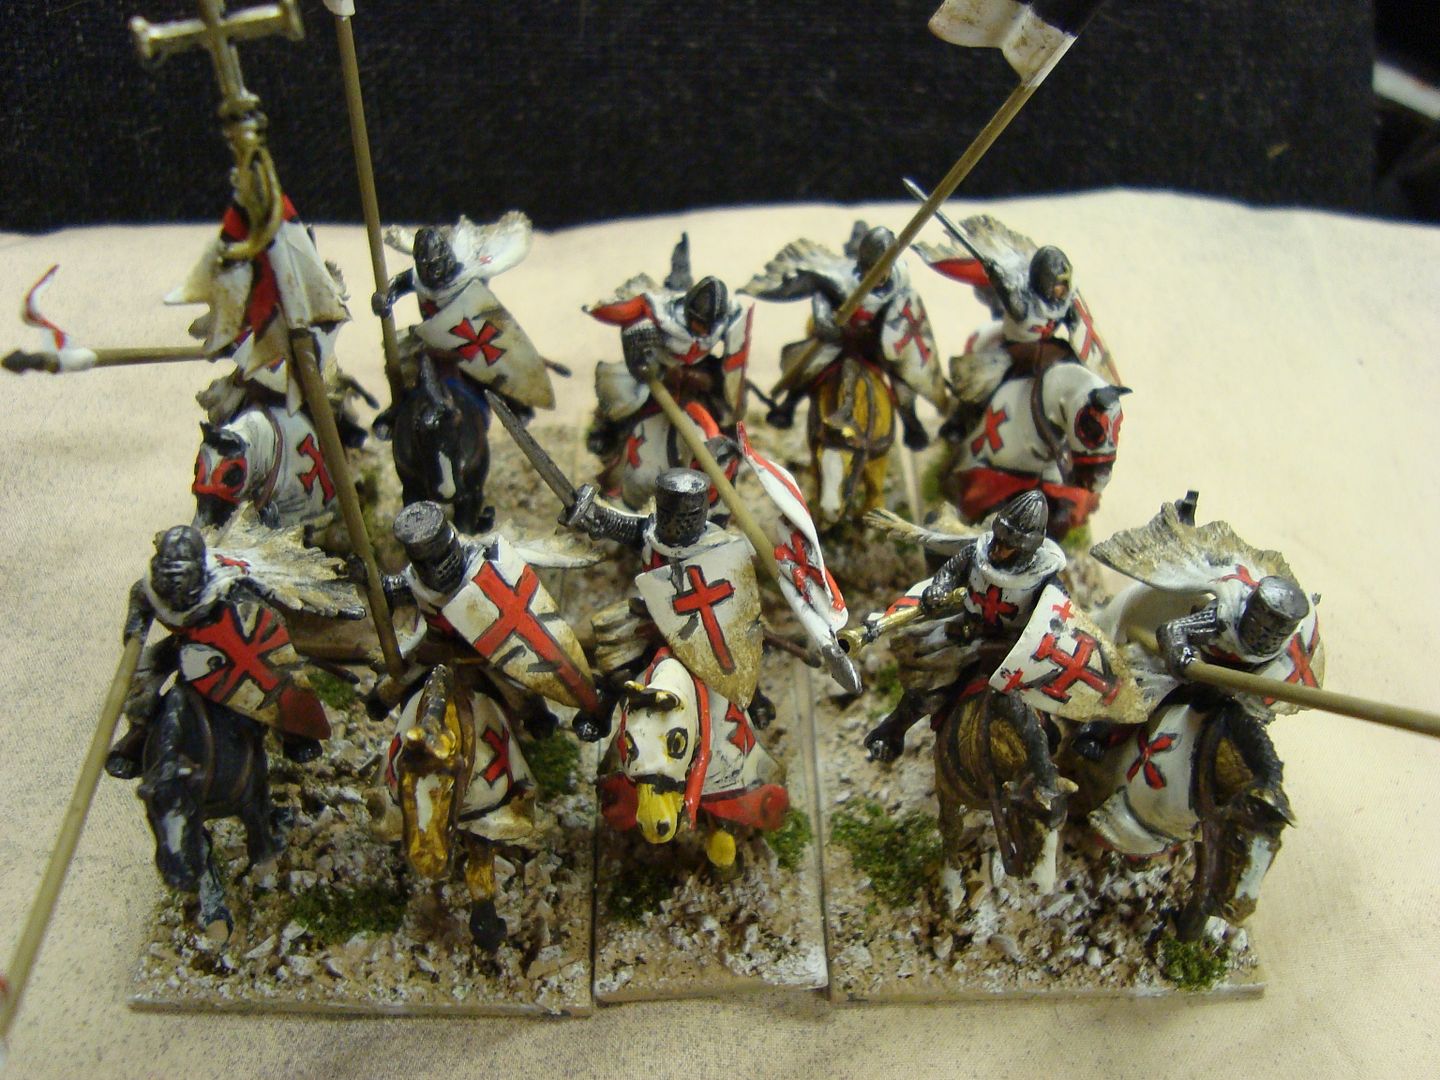 Templar Knights